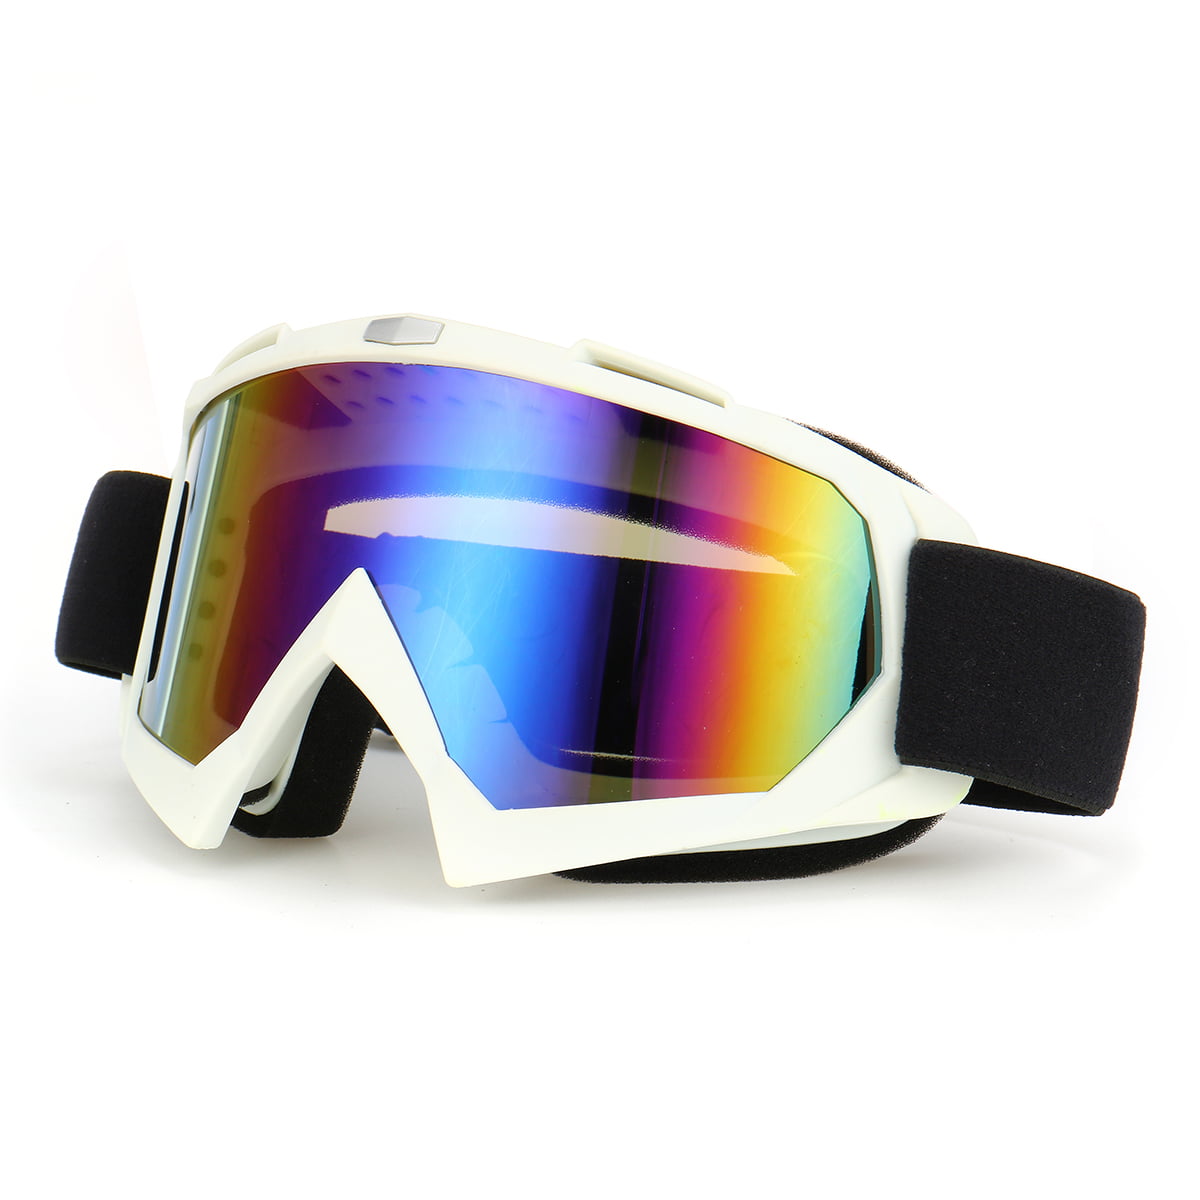 Unisex Adult Ski Goggle Matte Black Frame Colorful Lens Motocross Glasses Safety 